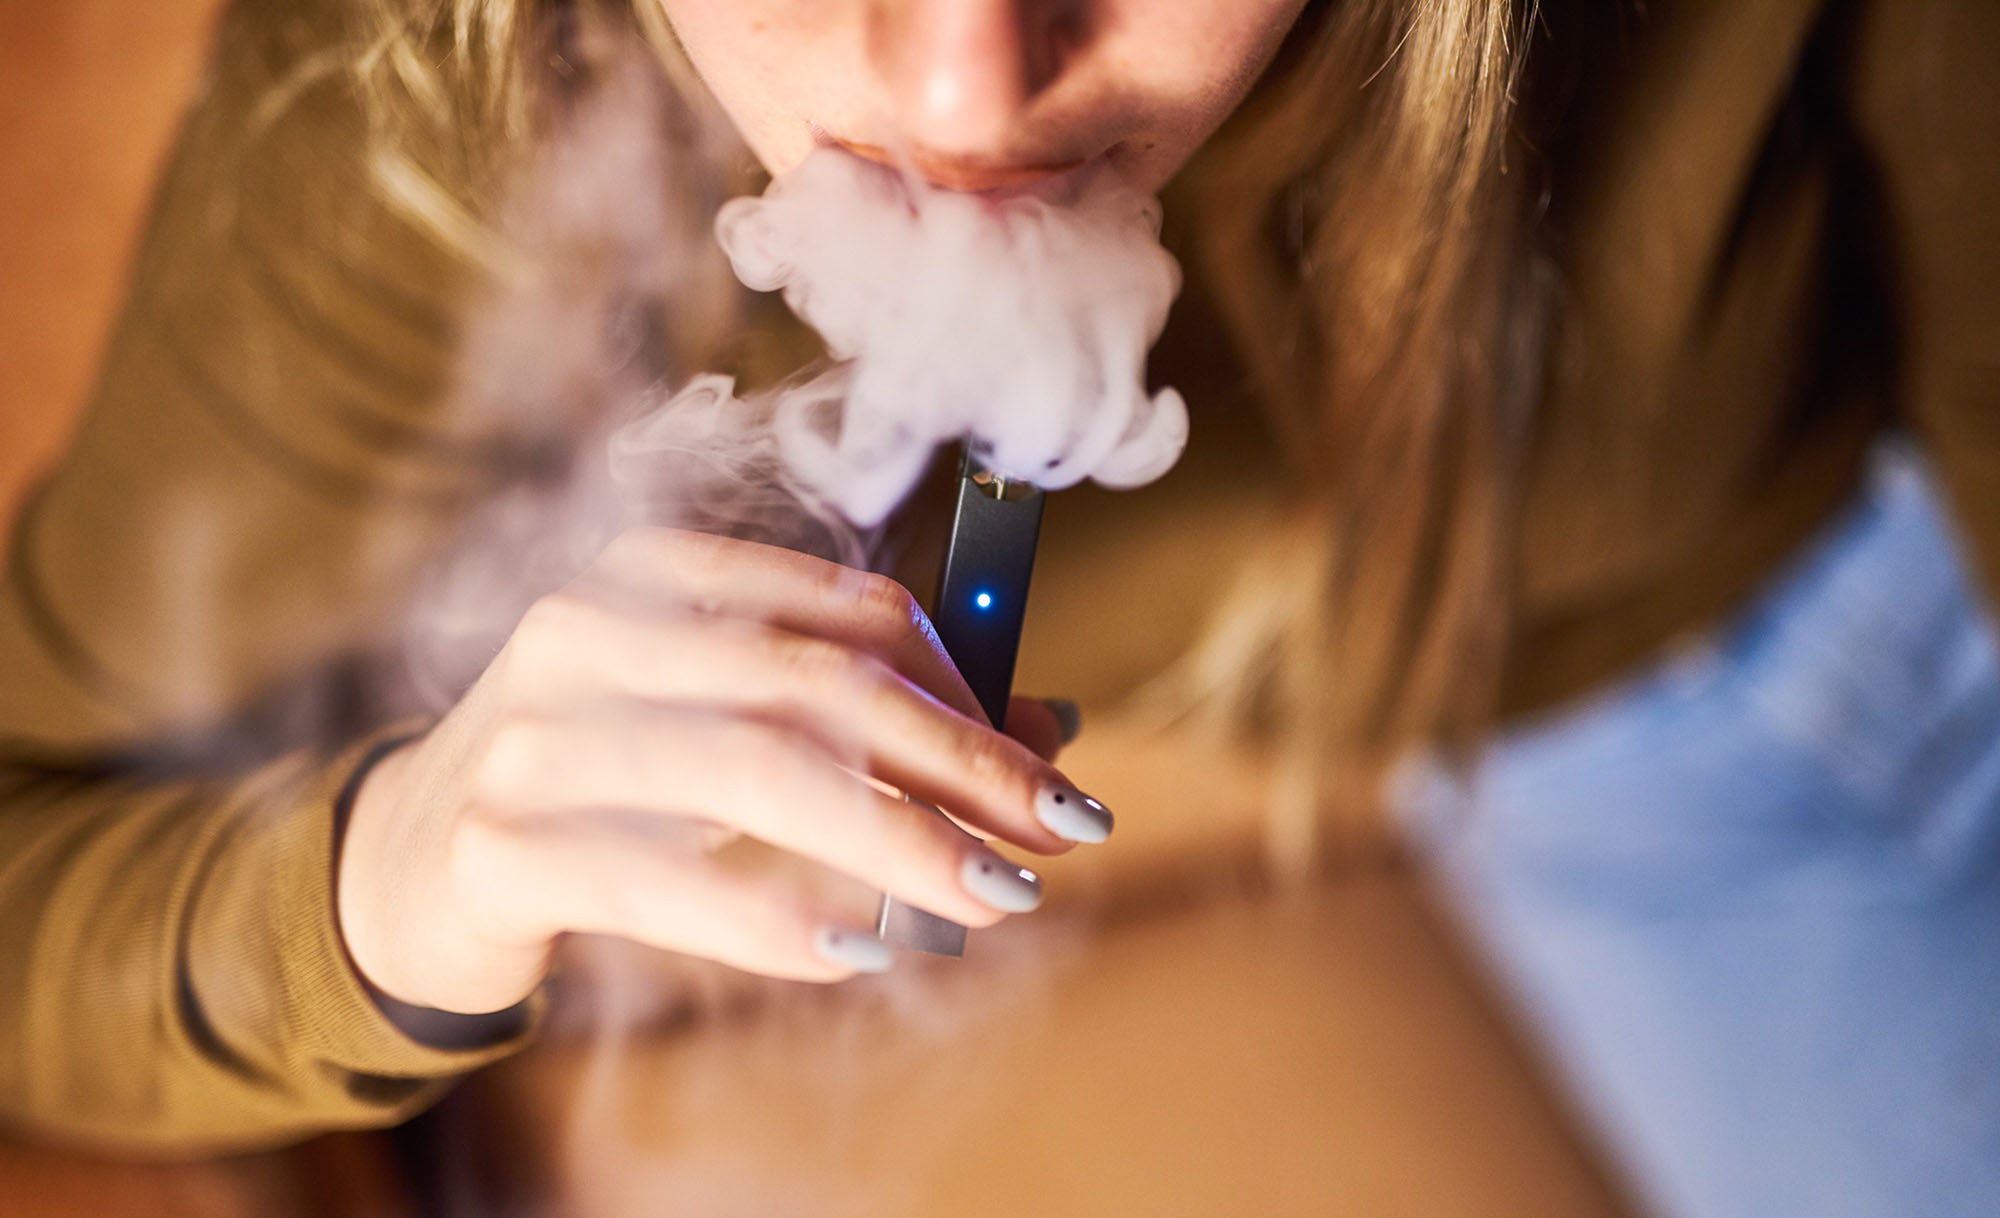 Электронные сигареты среди подростков. Девушка курит электронную сигарету. Девушка с электронной сигаретой. Курящий подросток. Дым электронных сигарет.